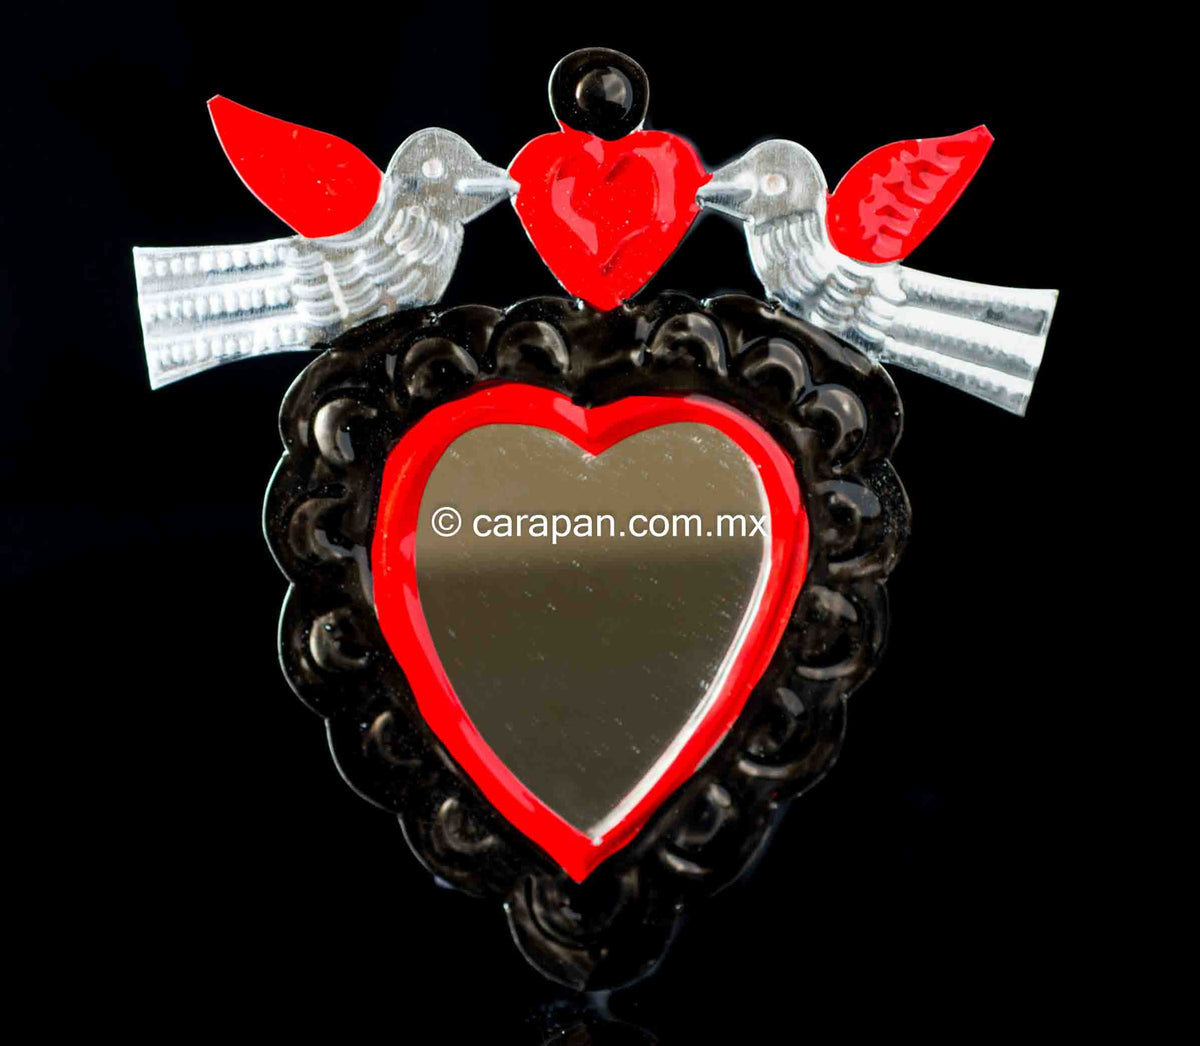 Tin heart from Oaxaca Mexico